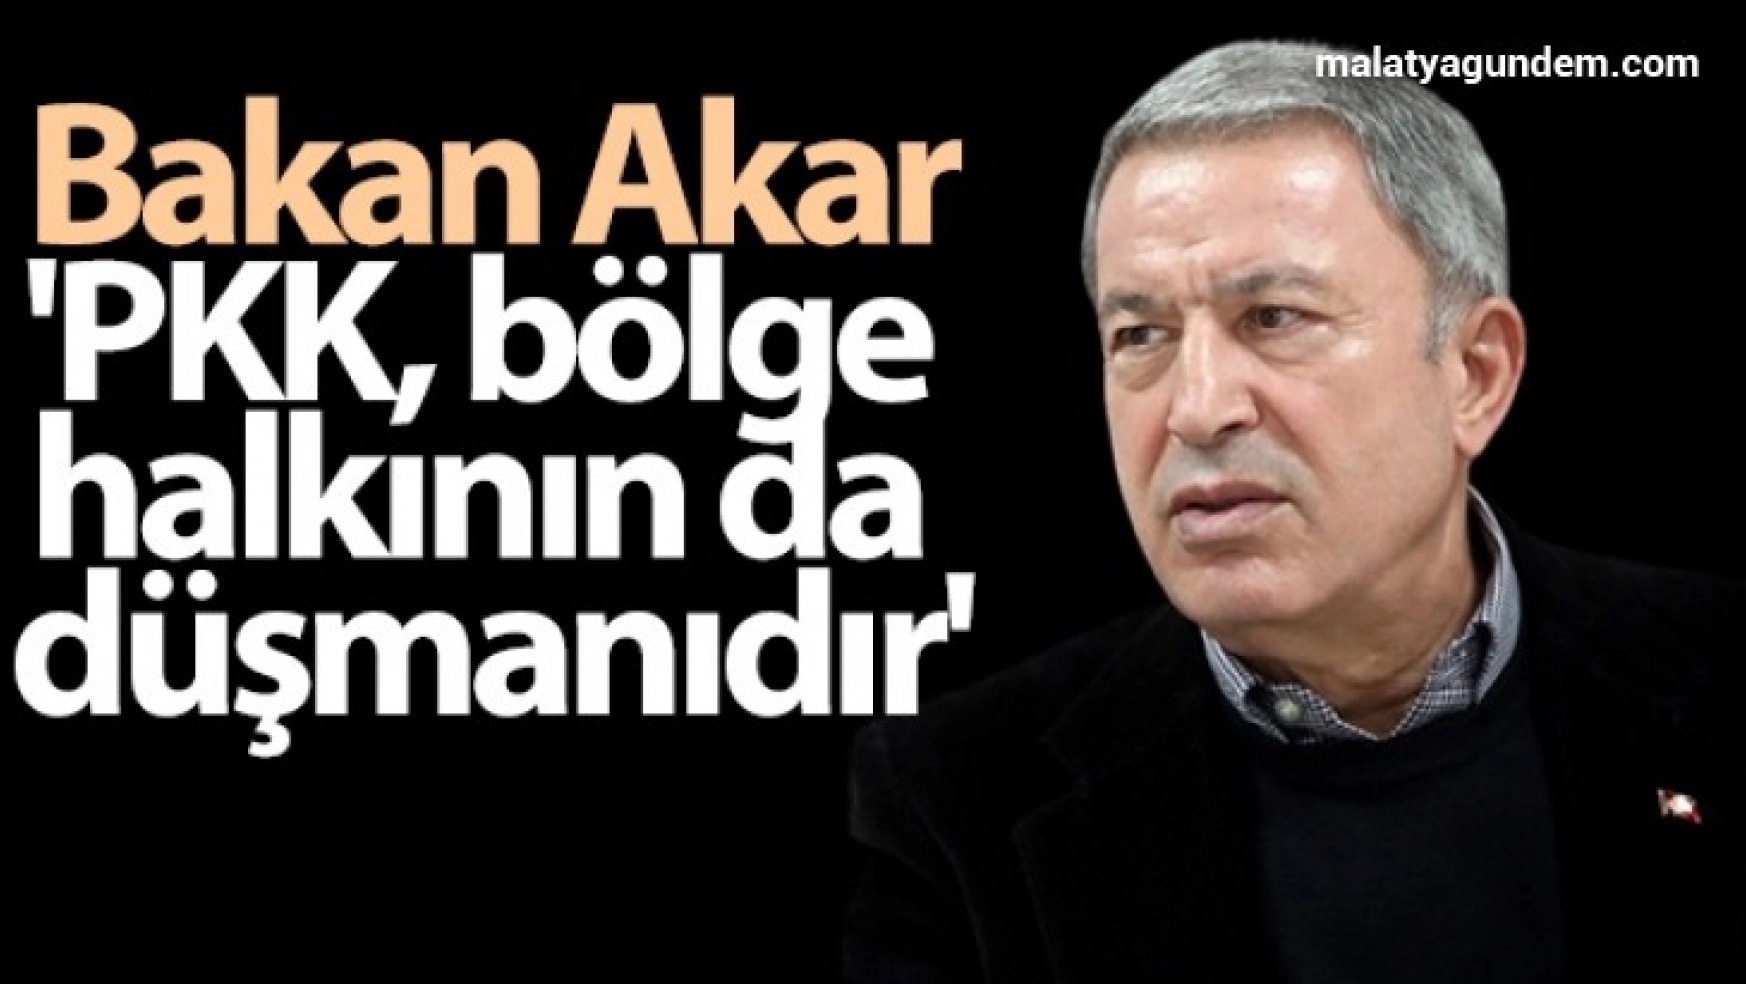 Bakan Akar: 'PKK, bölge halkının da düşmanıdır'